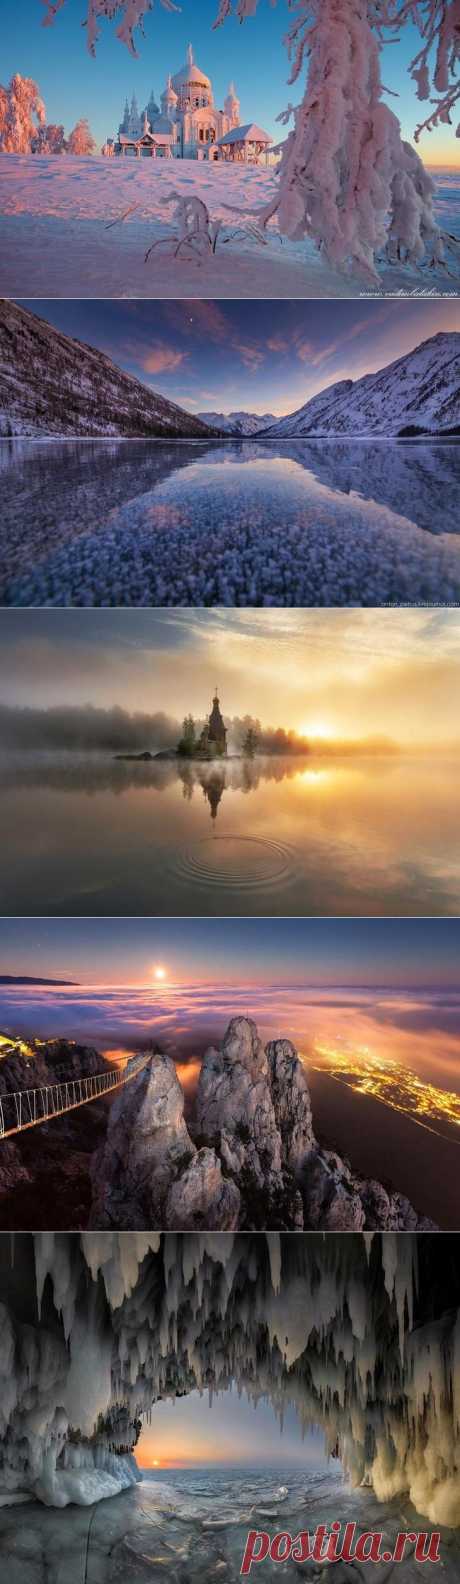 Россия: 15 самых красивых пейзажей